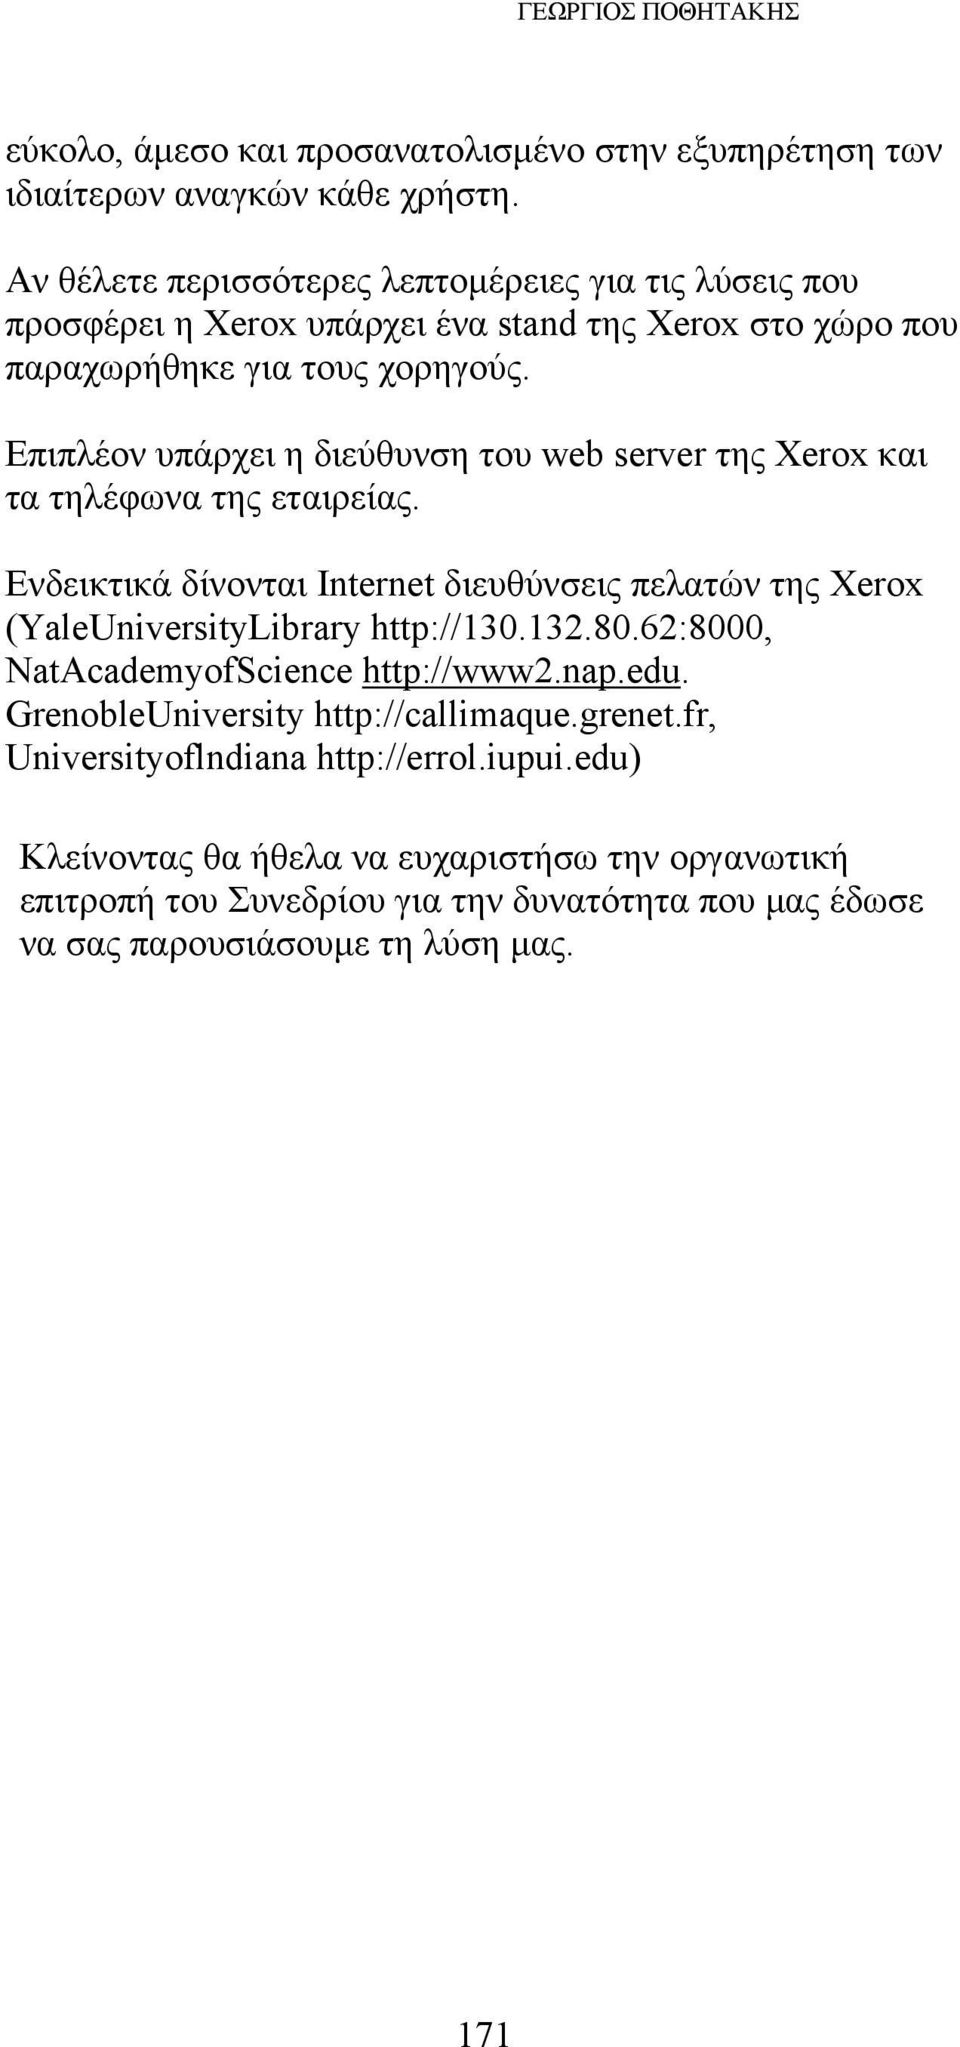 Επιπλέον υπάρχει η διεύθυνση του web server της Xerox και τα τηλέφωνα της εταιρείας. Ενδεικτικά δίνονται Internet διευθύνσεις πελατών της Xerox (YaleUniversityLibrary http://130.